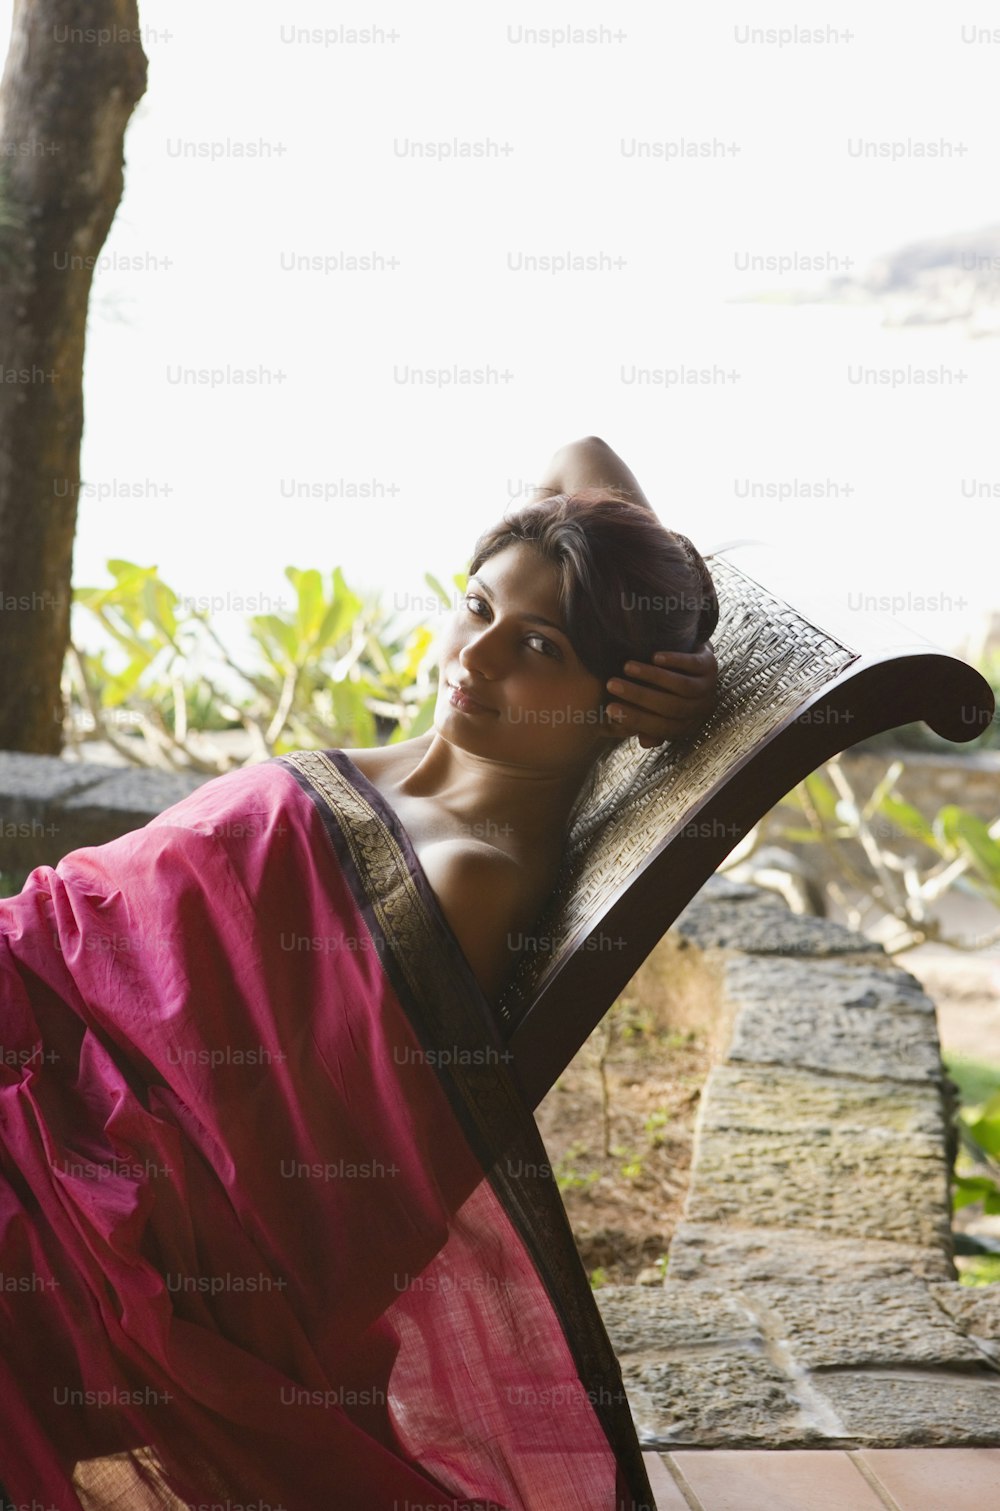 Una mujer con un sari rojo acostada en una silla de madera